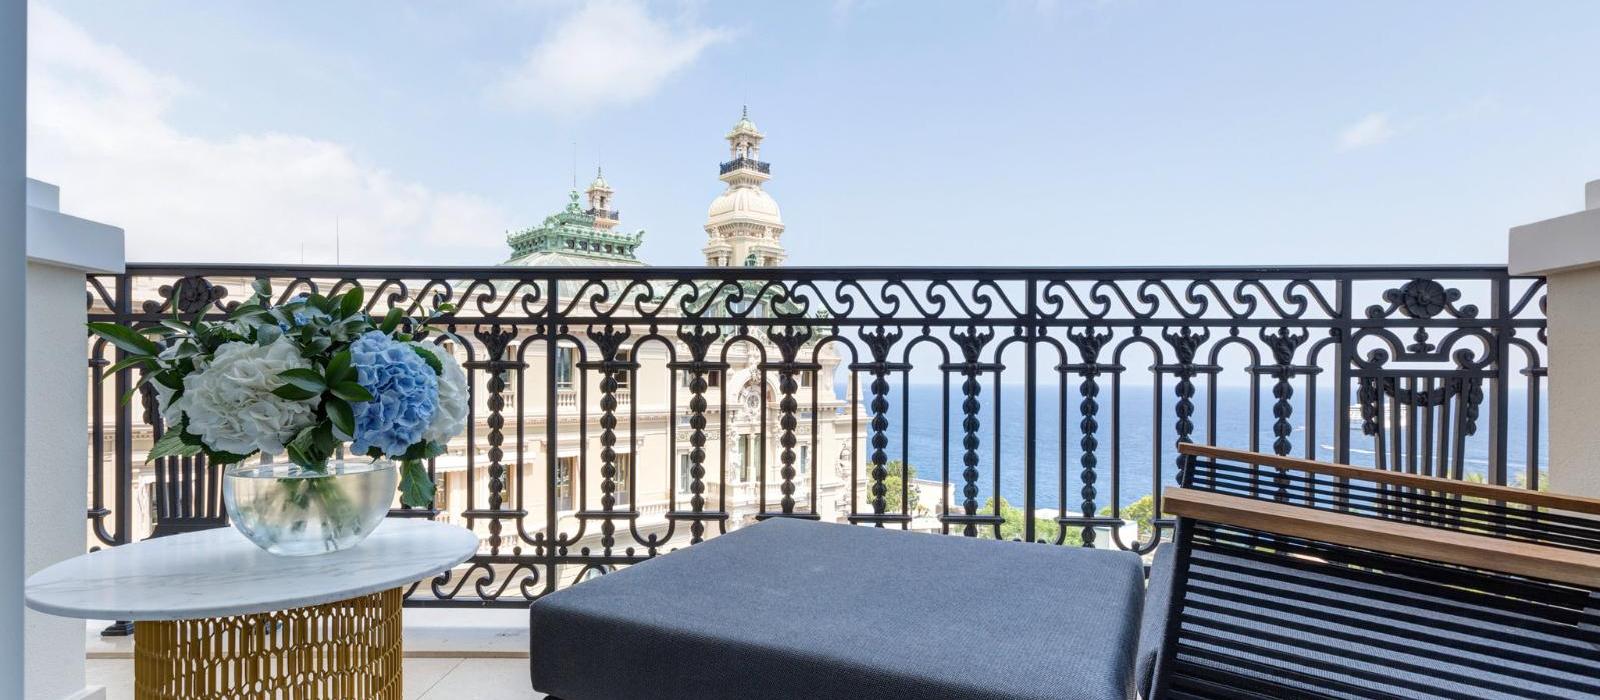 蒙特卡洛巴黎大饭店(Hotel de Paris Monte-Carlo) 图片  www.lhw.cn